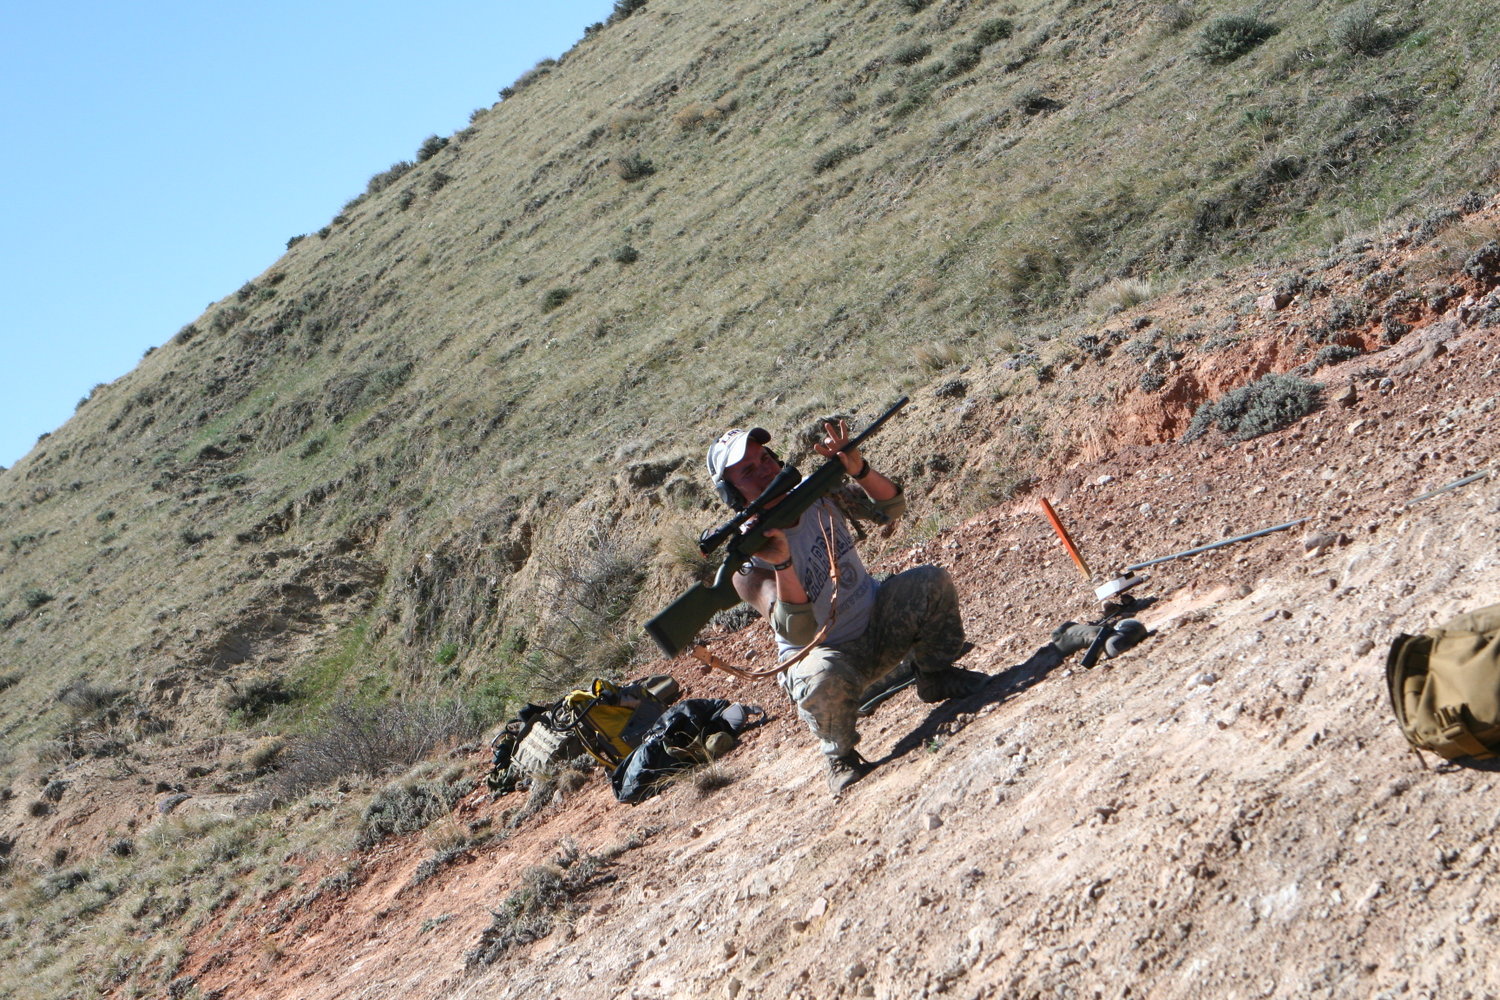 Competition Dynamics - Combat Biathlon, April 2012
, photo 